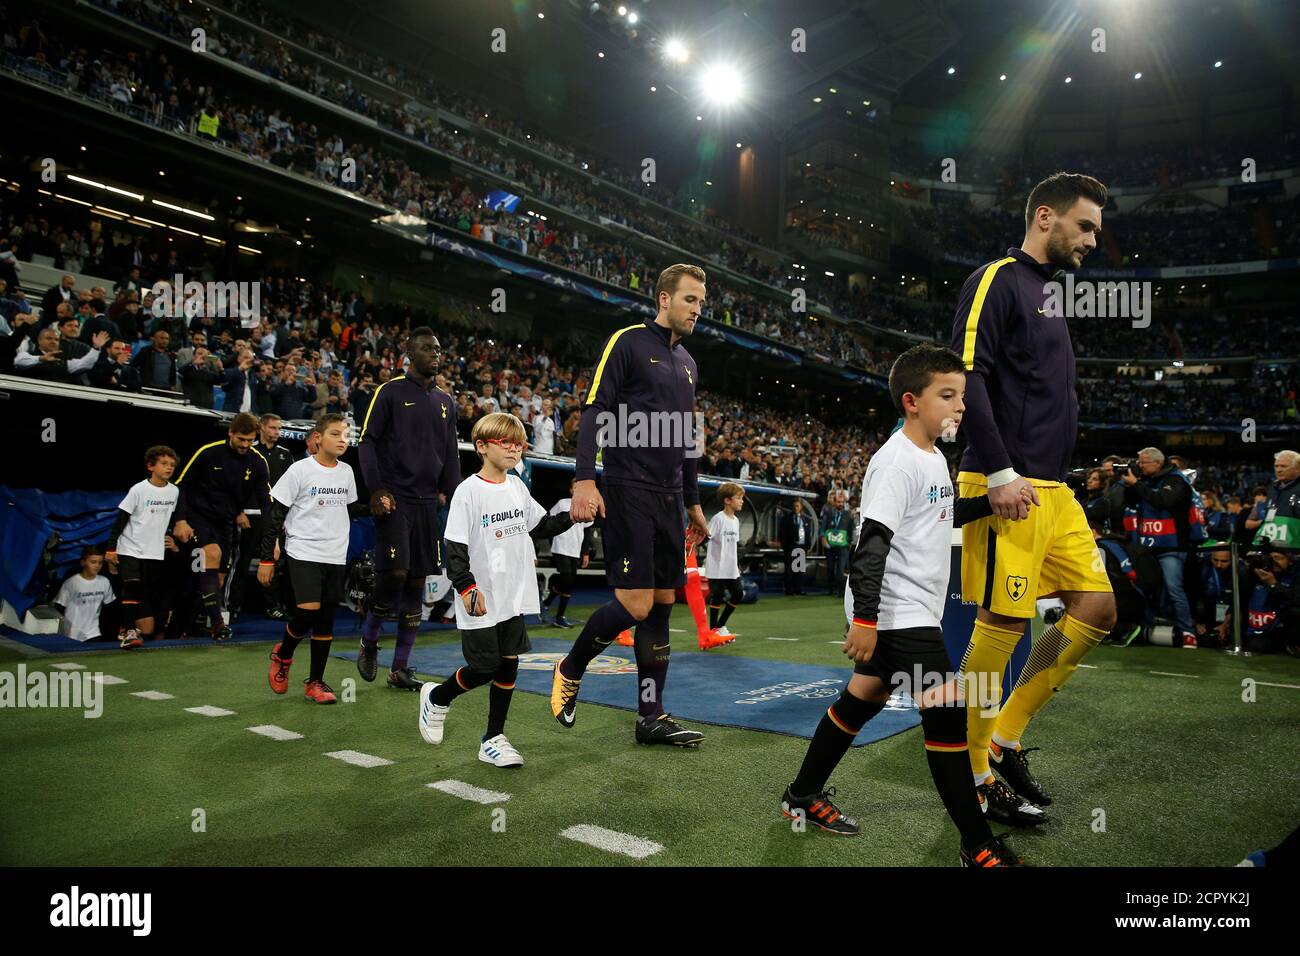 Soccer Football Champions League Real Madrid Vs Tottenham Hotspur Santiago Bernabeu Stadium Madrid Spain October 17